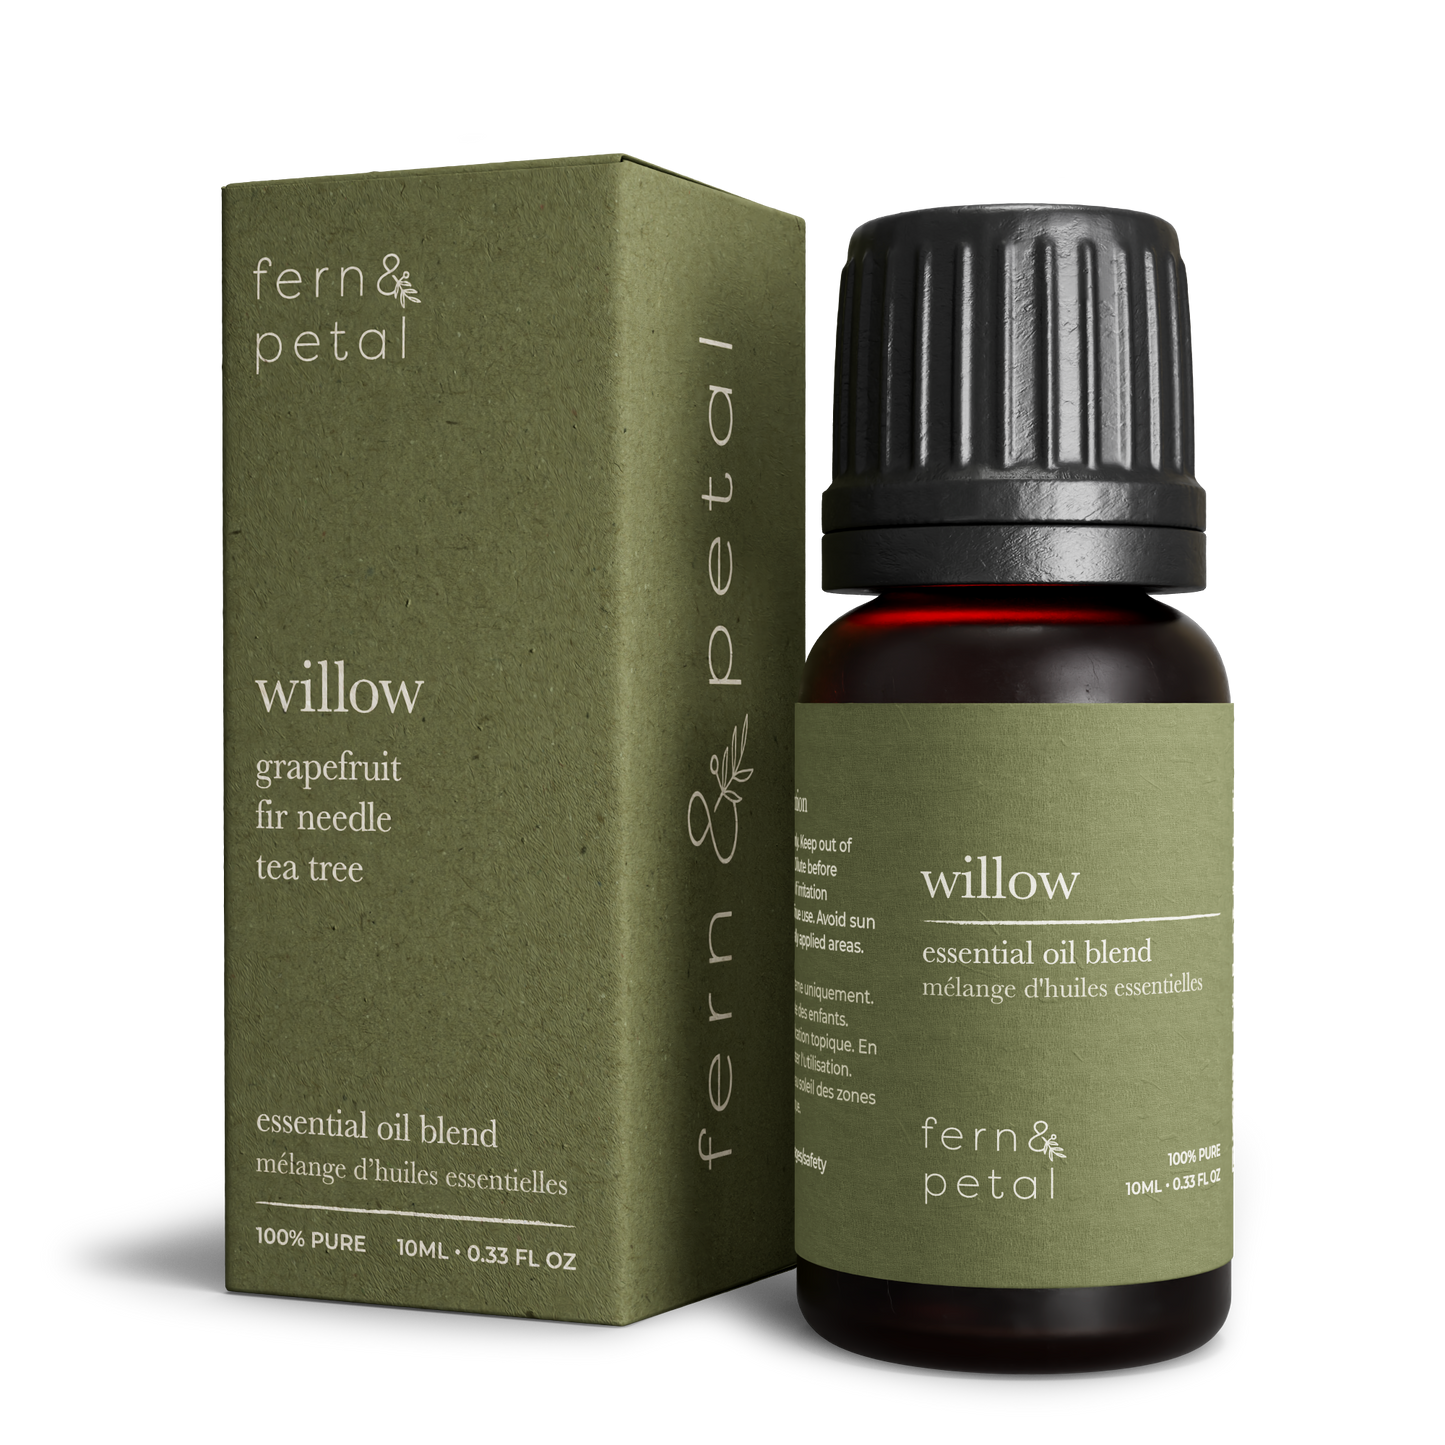 Fern & Petal - Willow